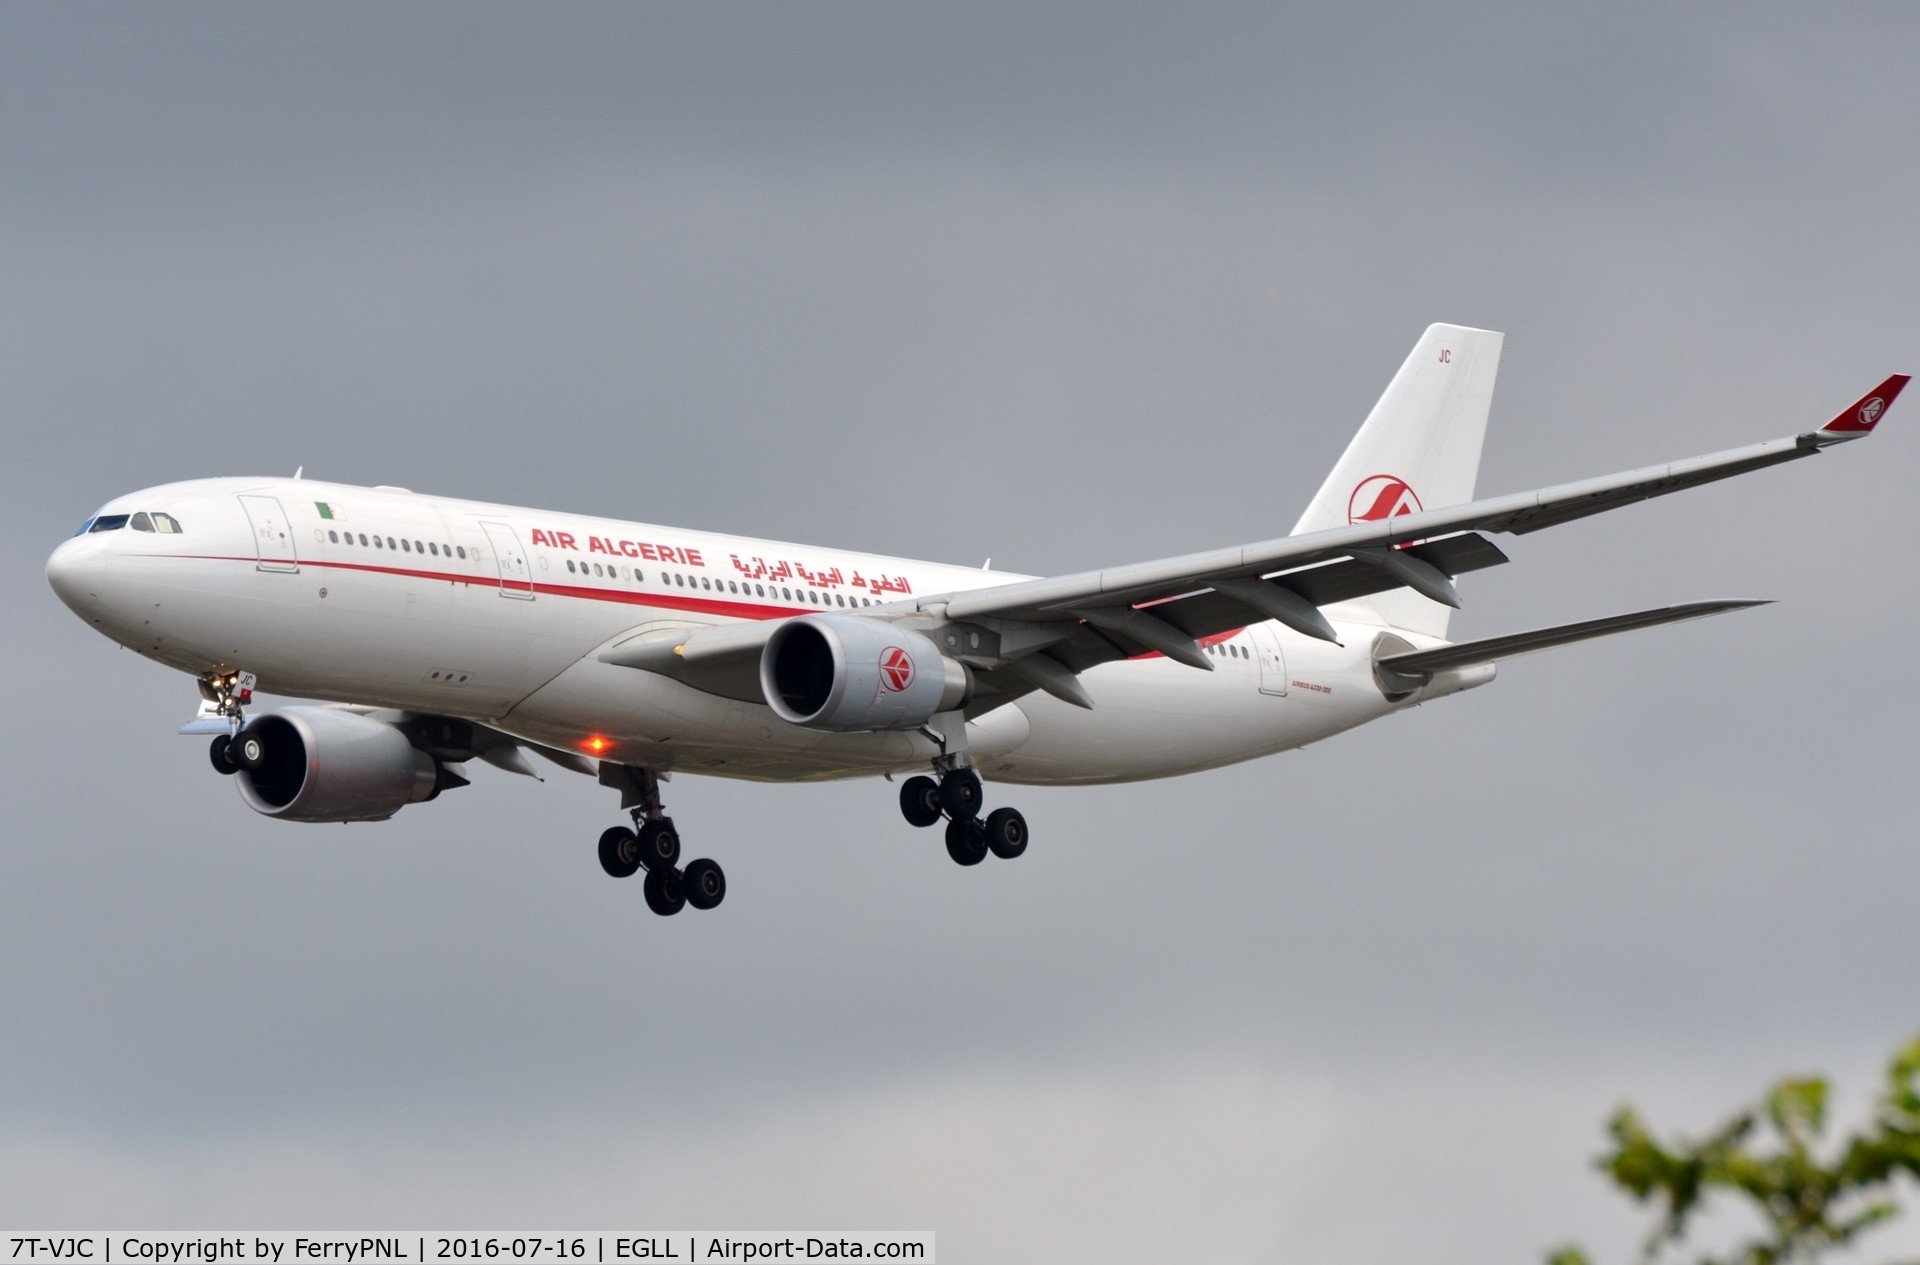 7T-VJC, 2015 Airbus A330-202 C/N 1649, Air Algerie A332 landing in LHR